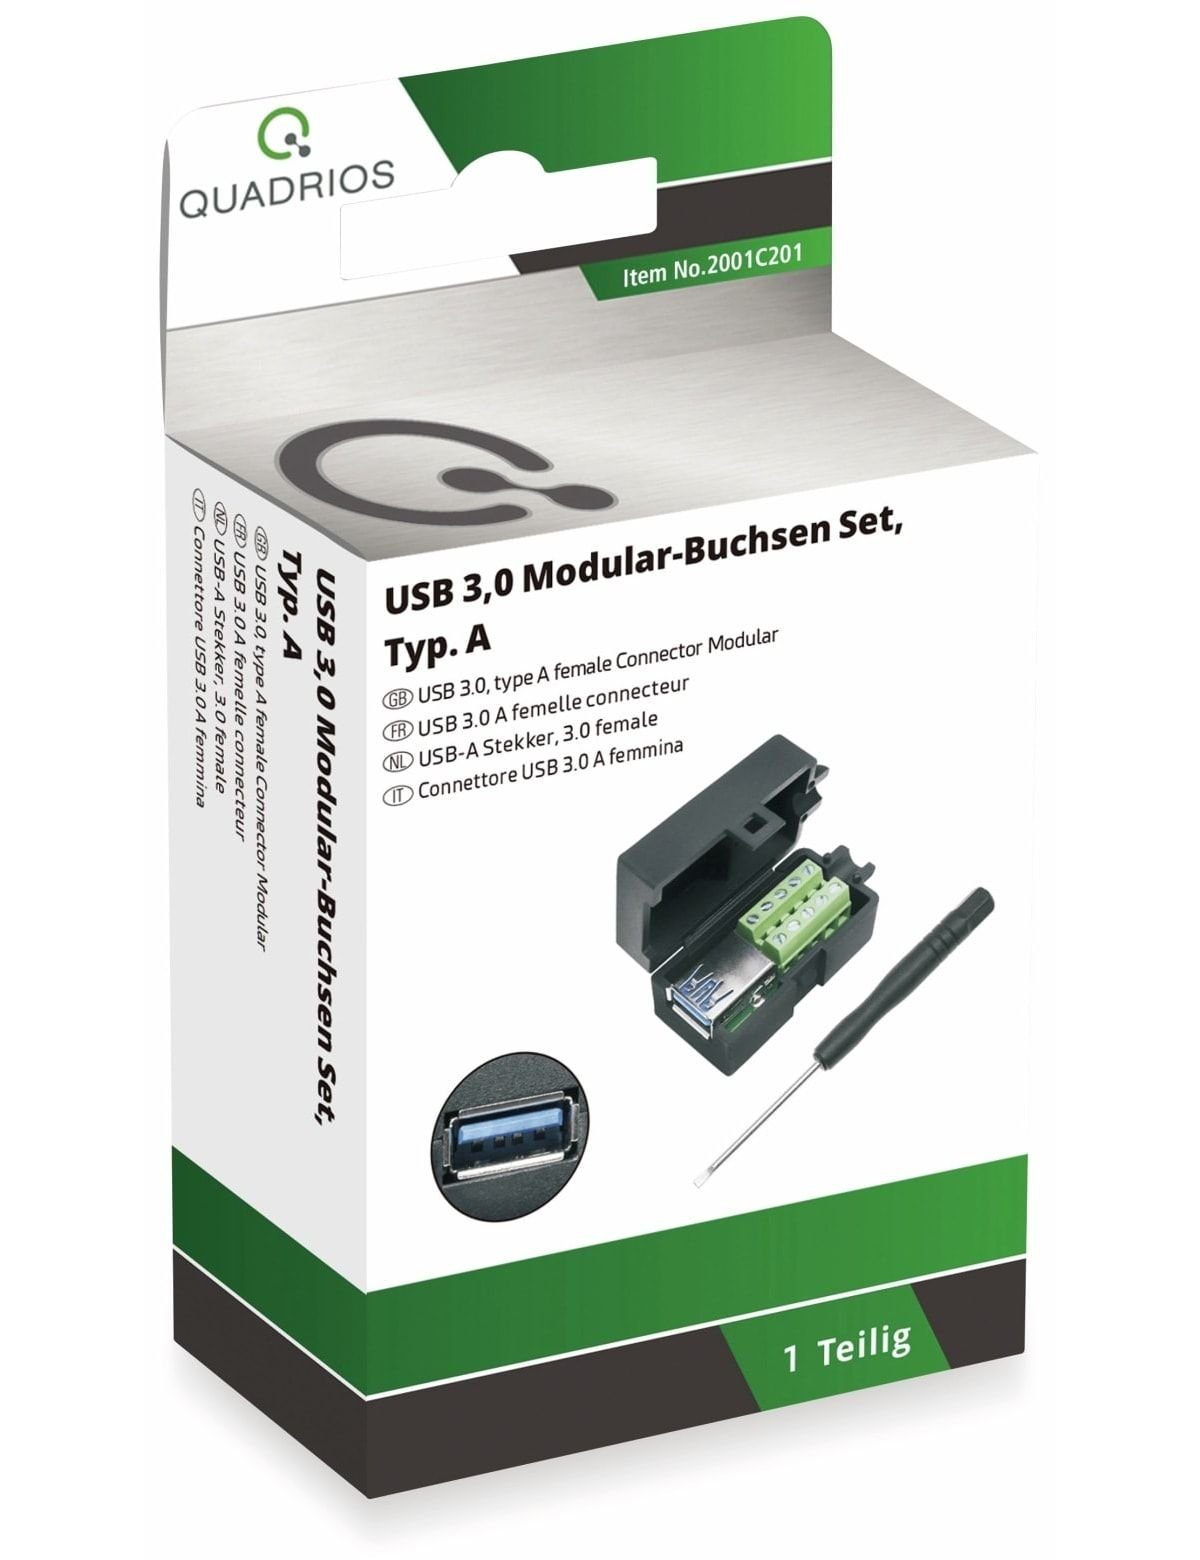 - 3.0 2001C201, QUADRIOS, USB Klemmen USB-Modular-Set, Quadrios